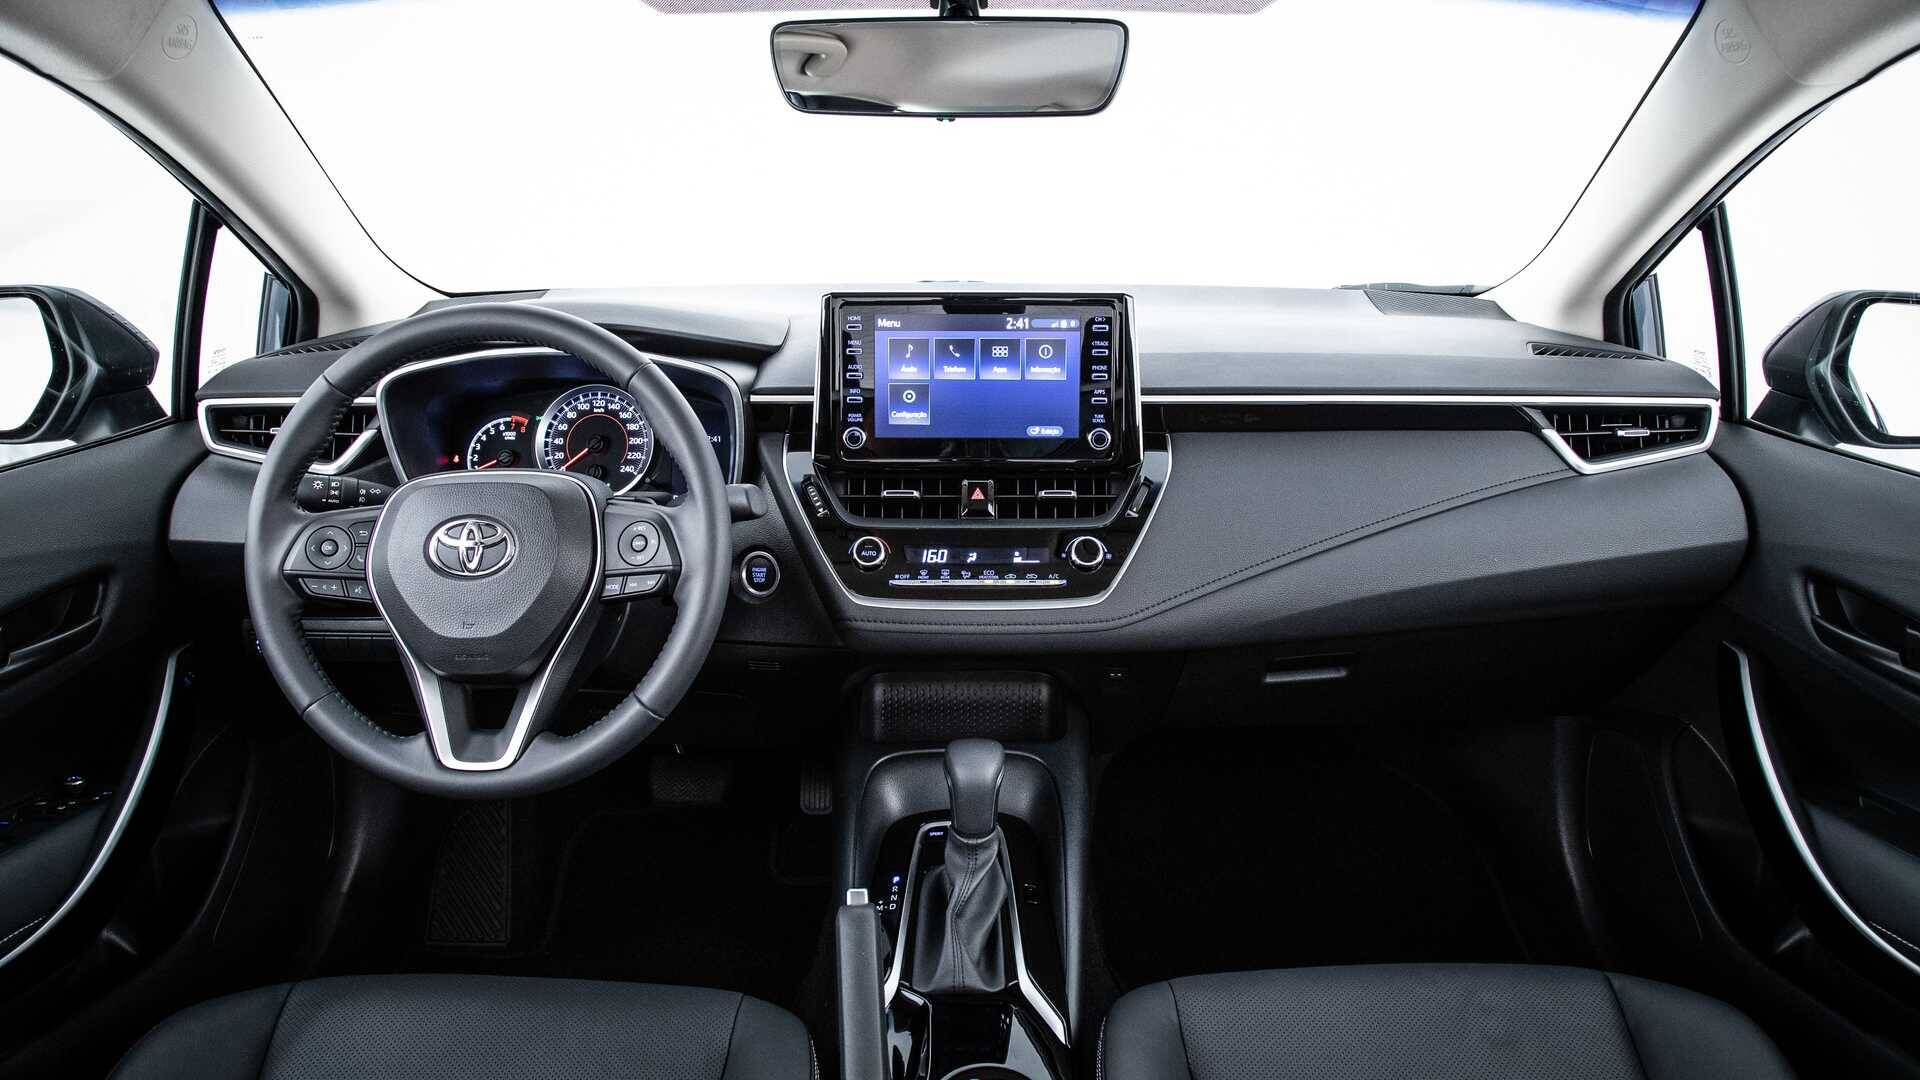 Toyota Corolla 2020. Foto: Divulgação